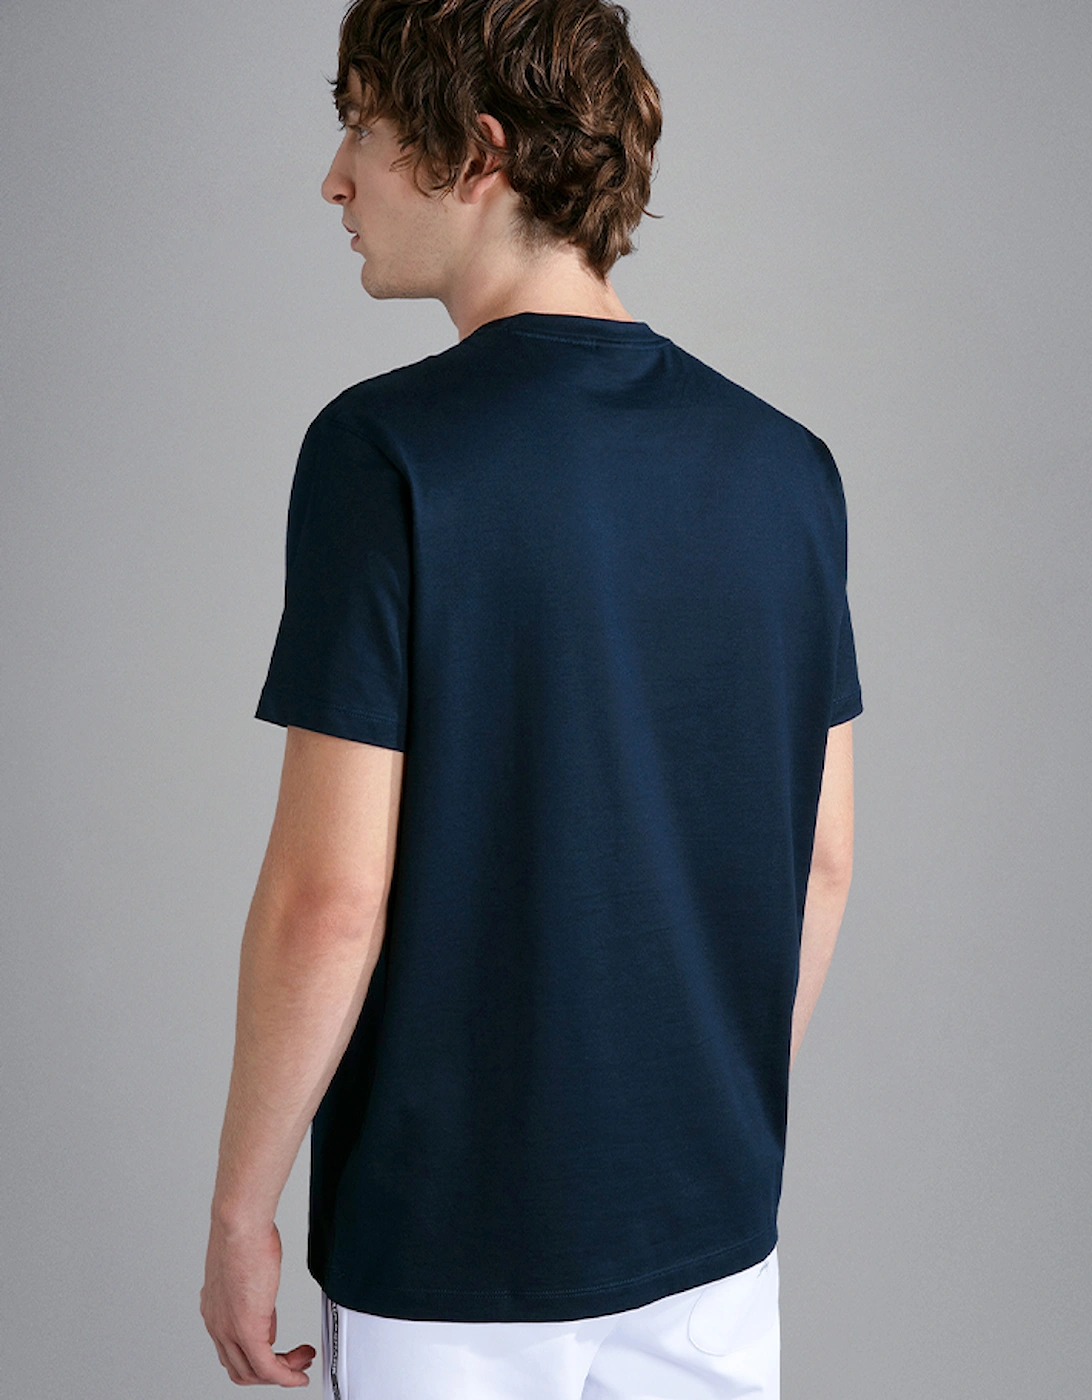 Men's Cotton Jersey T-Shirt with Reflex Shark Print